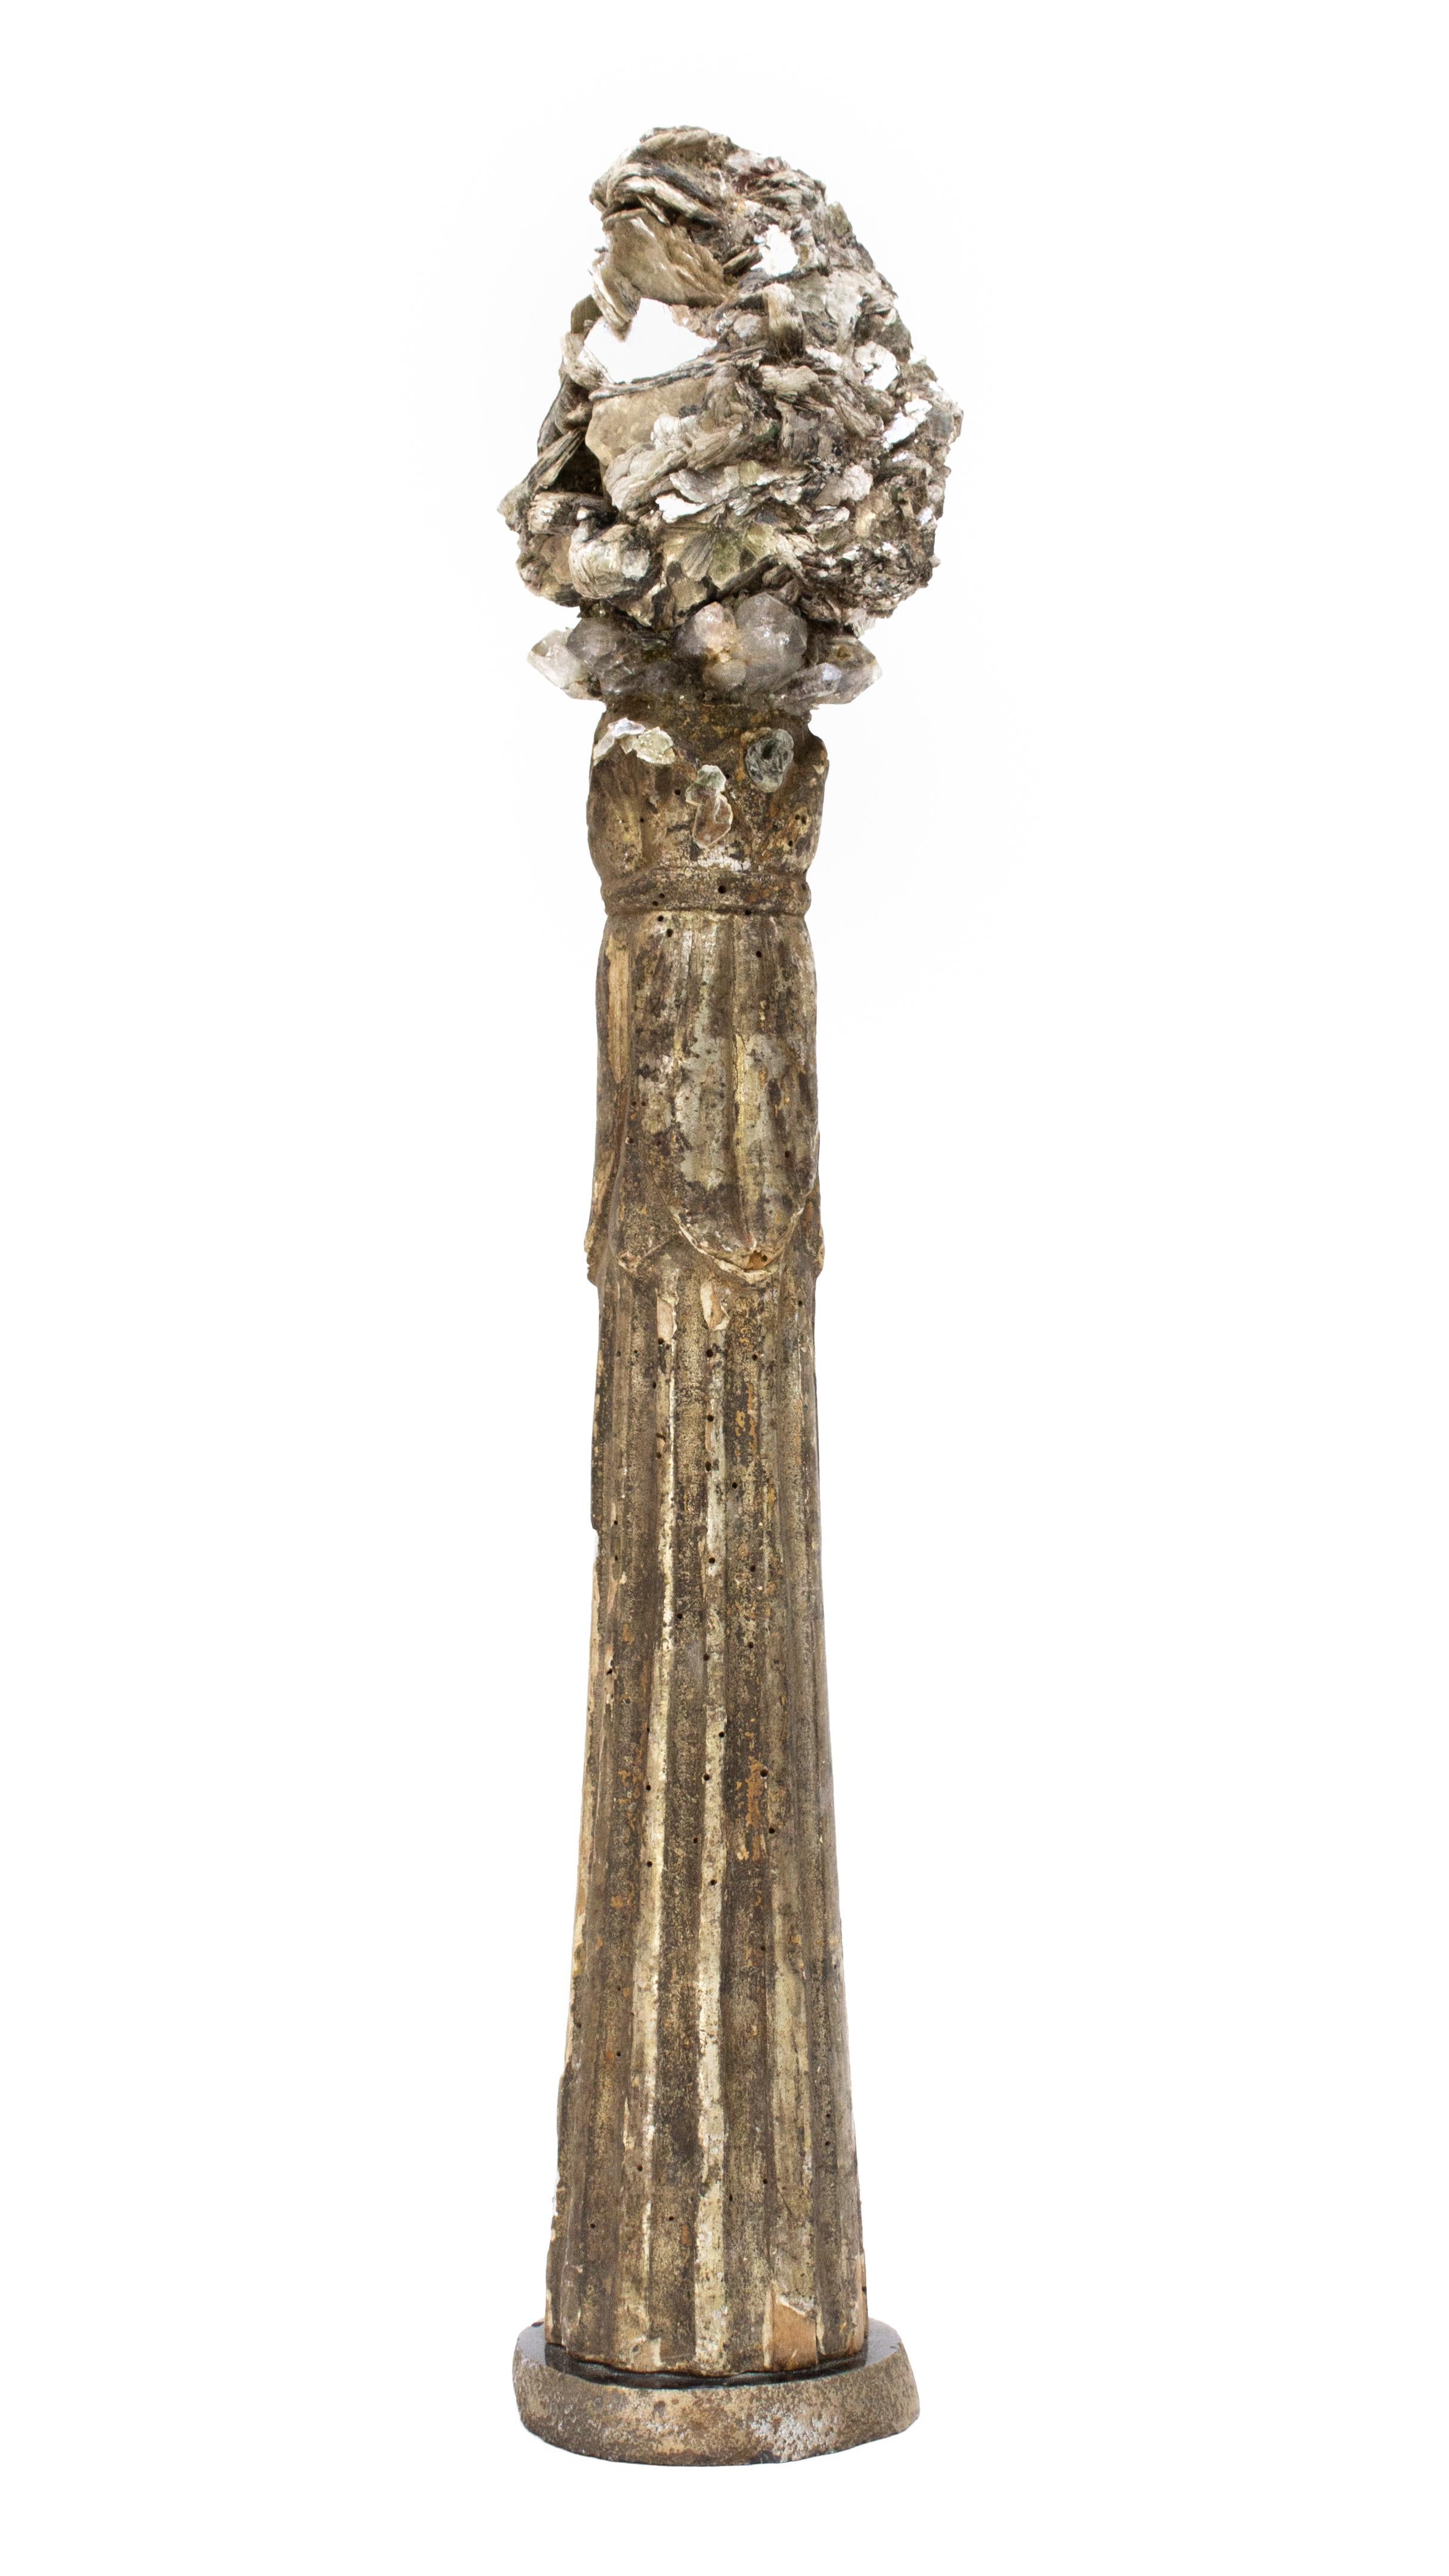 Fragment sculptural italien du XVIIIe siècle décoré de pointes de mica et de quartz cristallin sur une base en agate polie. Le fragment du 18e siècle provenait à l'origine d'un chandelier d'une église historique en Italie.

L'œuvre est réalisée par